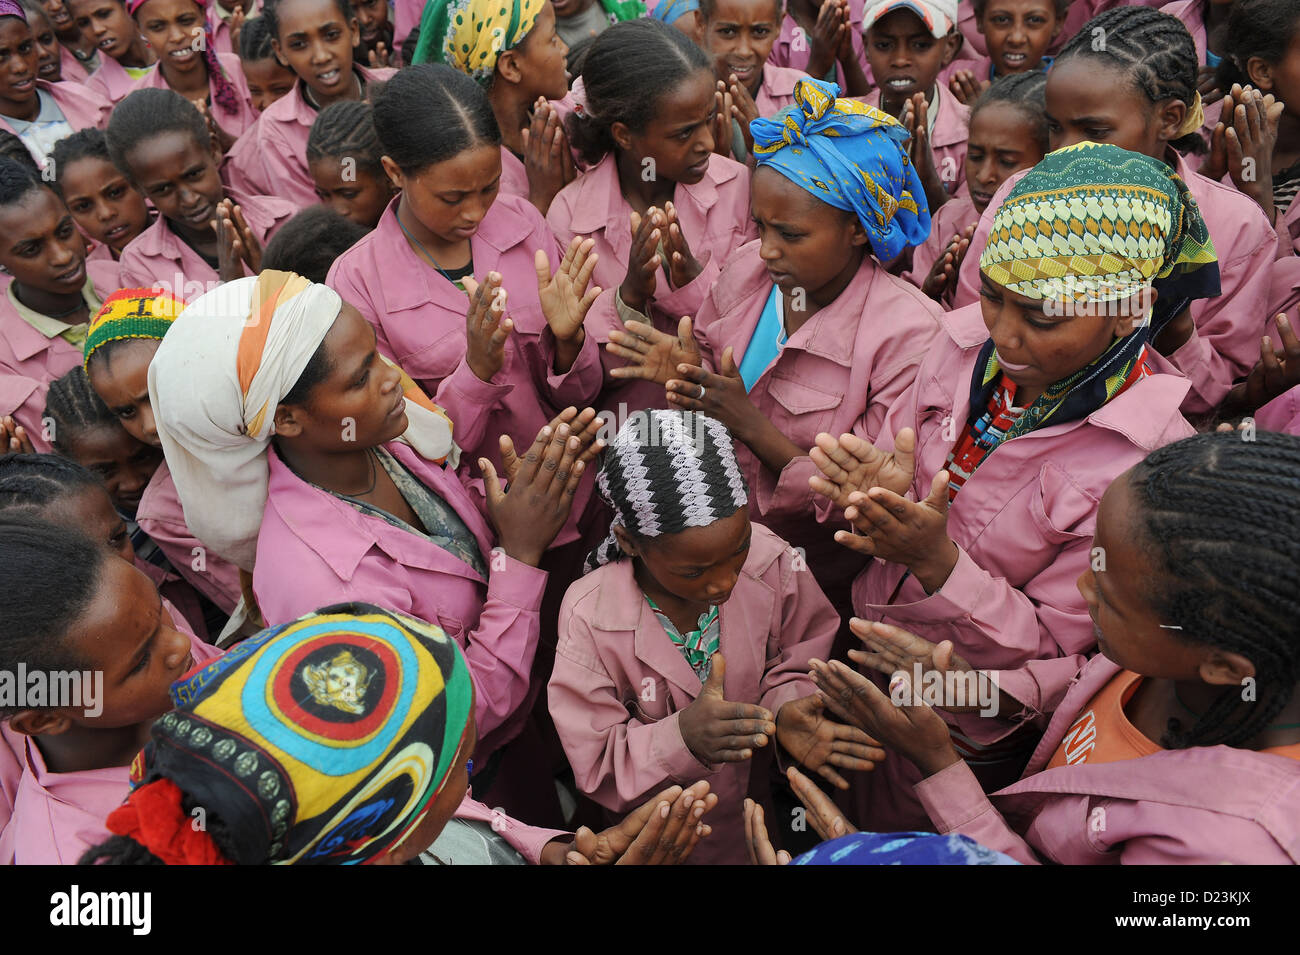 Zala Zembaba, Etiopía, las mujeres y los niños se reúnen después del trabajo Foto de stock